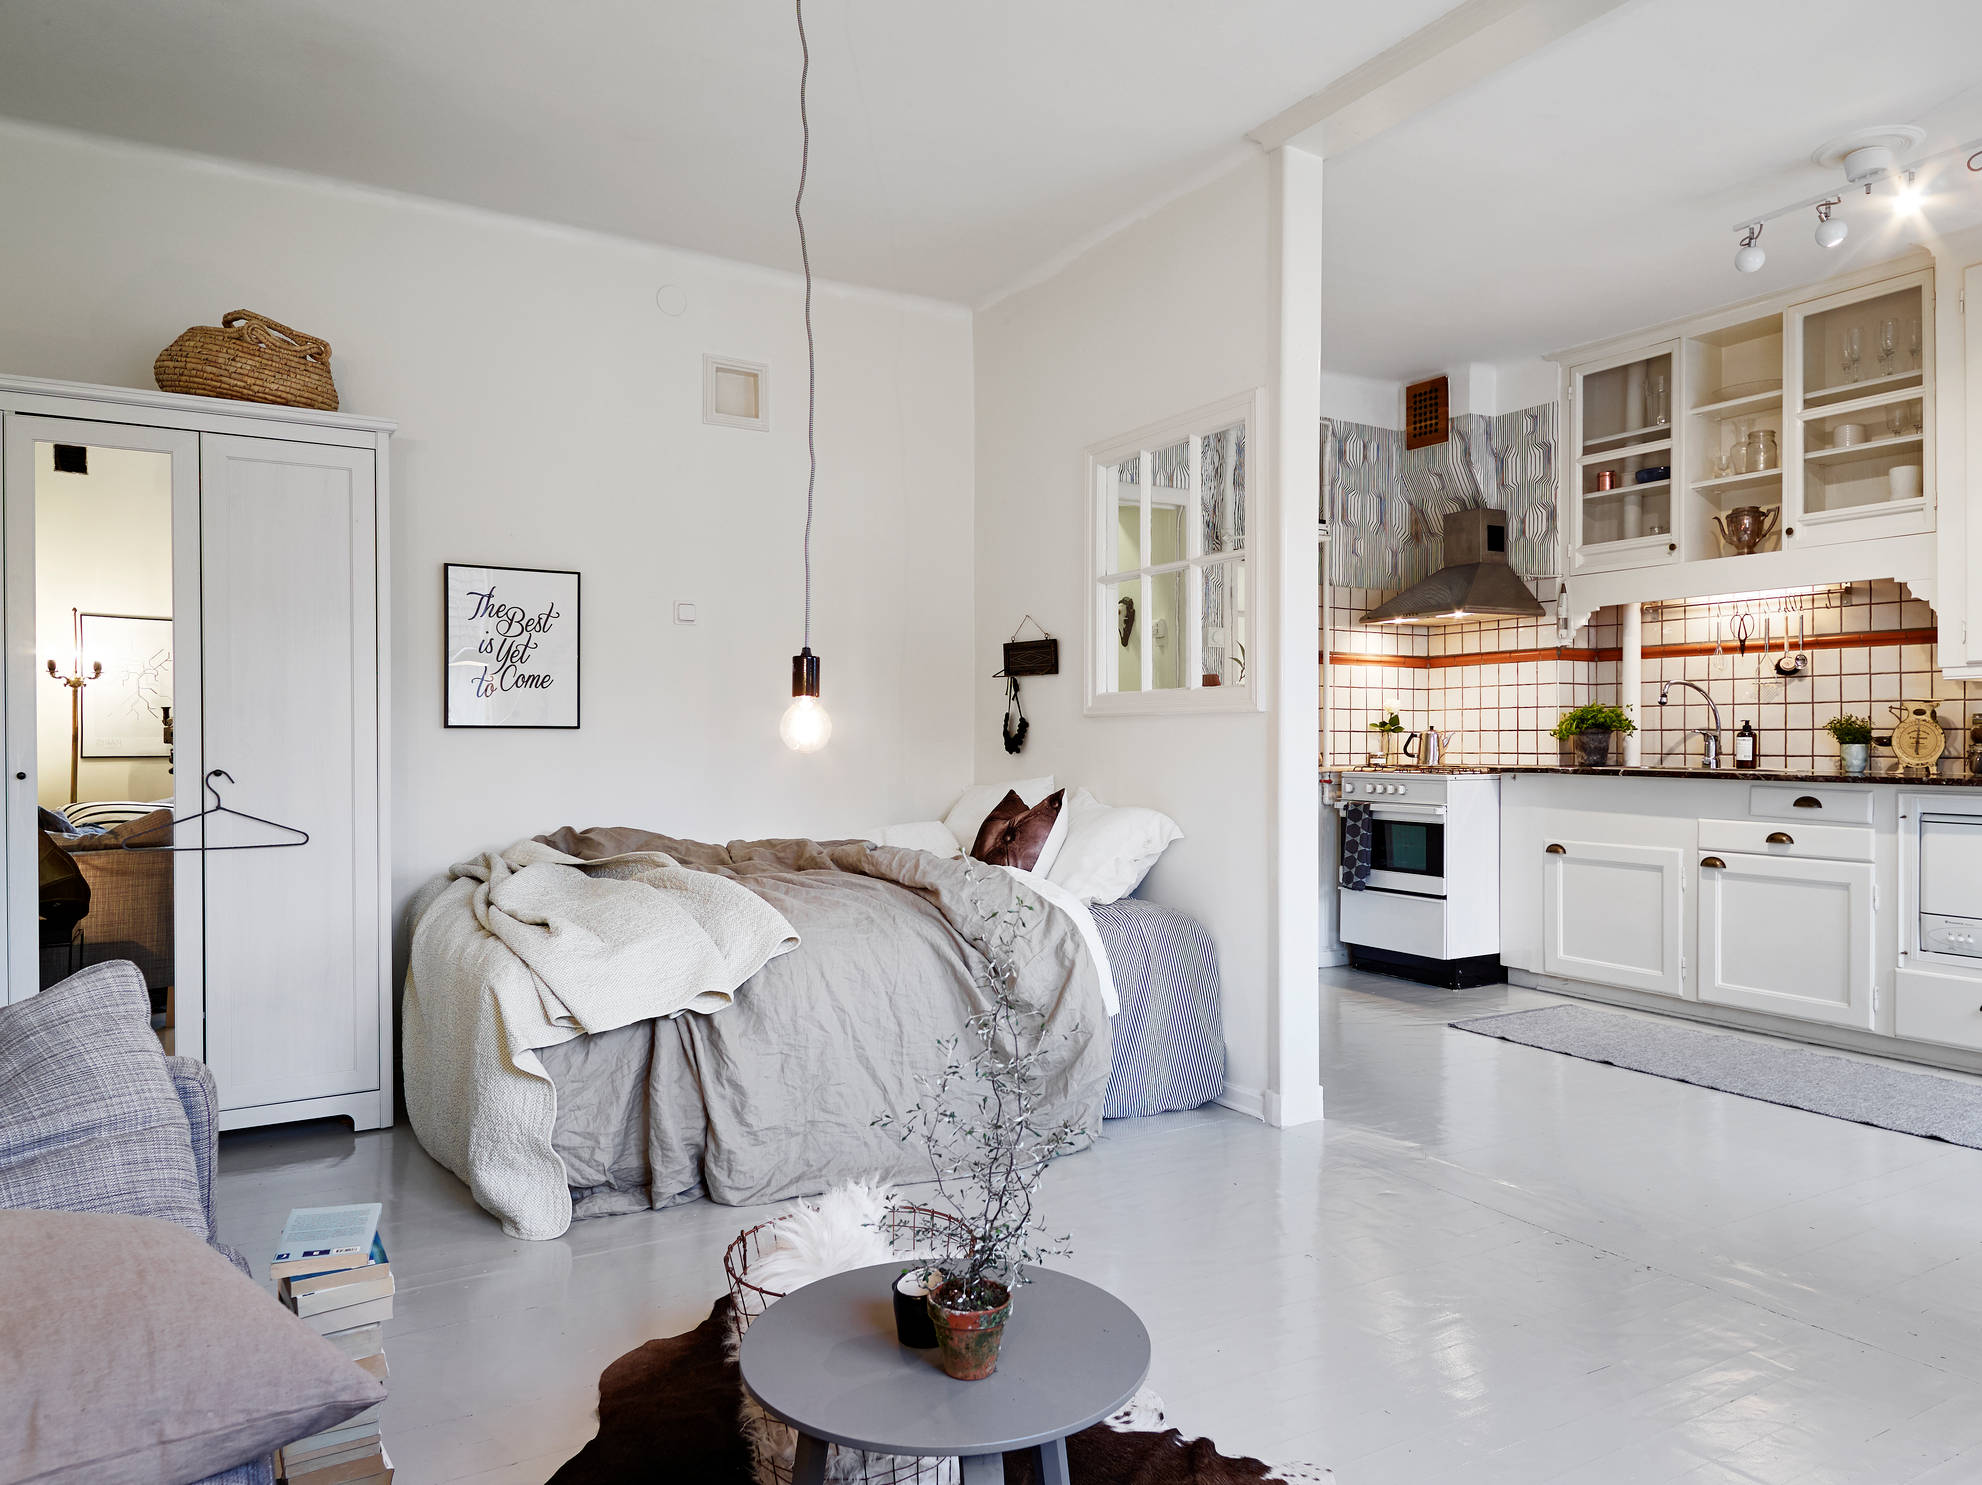 Woonkamer, slaapkamer en open keuken combinatie in klein appartement van 35m2